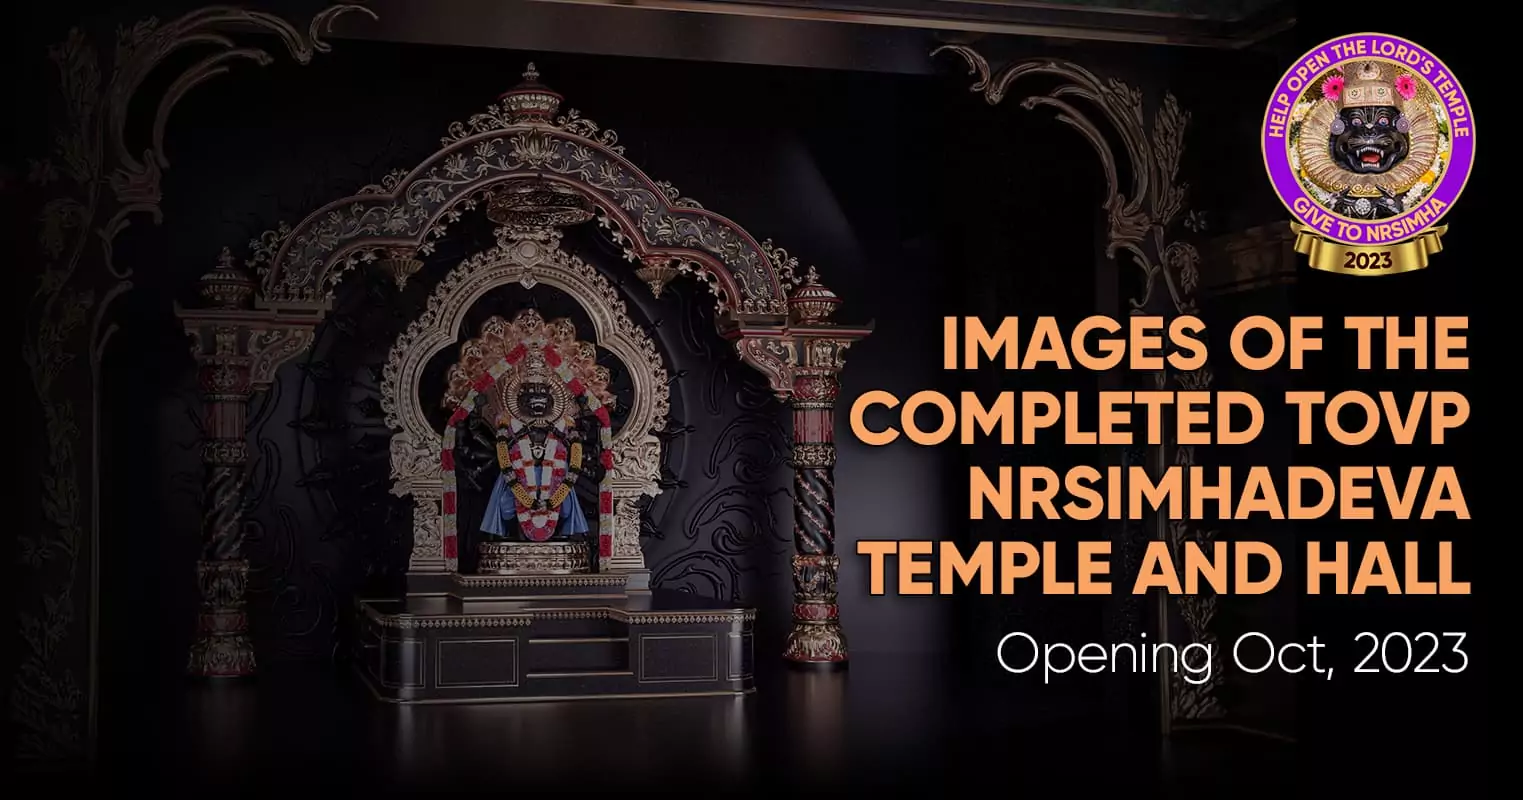 Imagens do templo e salão TOVP Nrsimhadeva concluídos